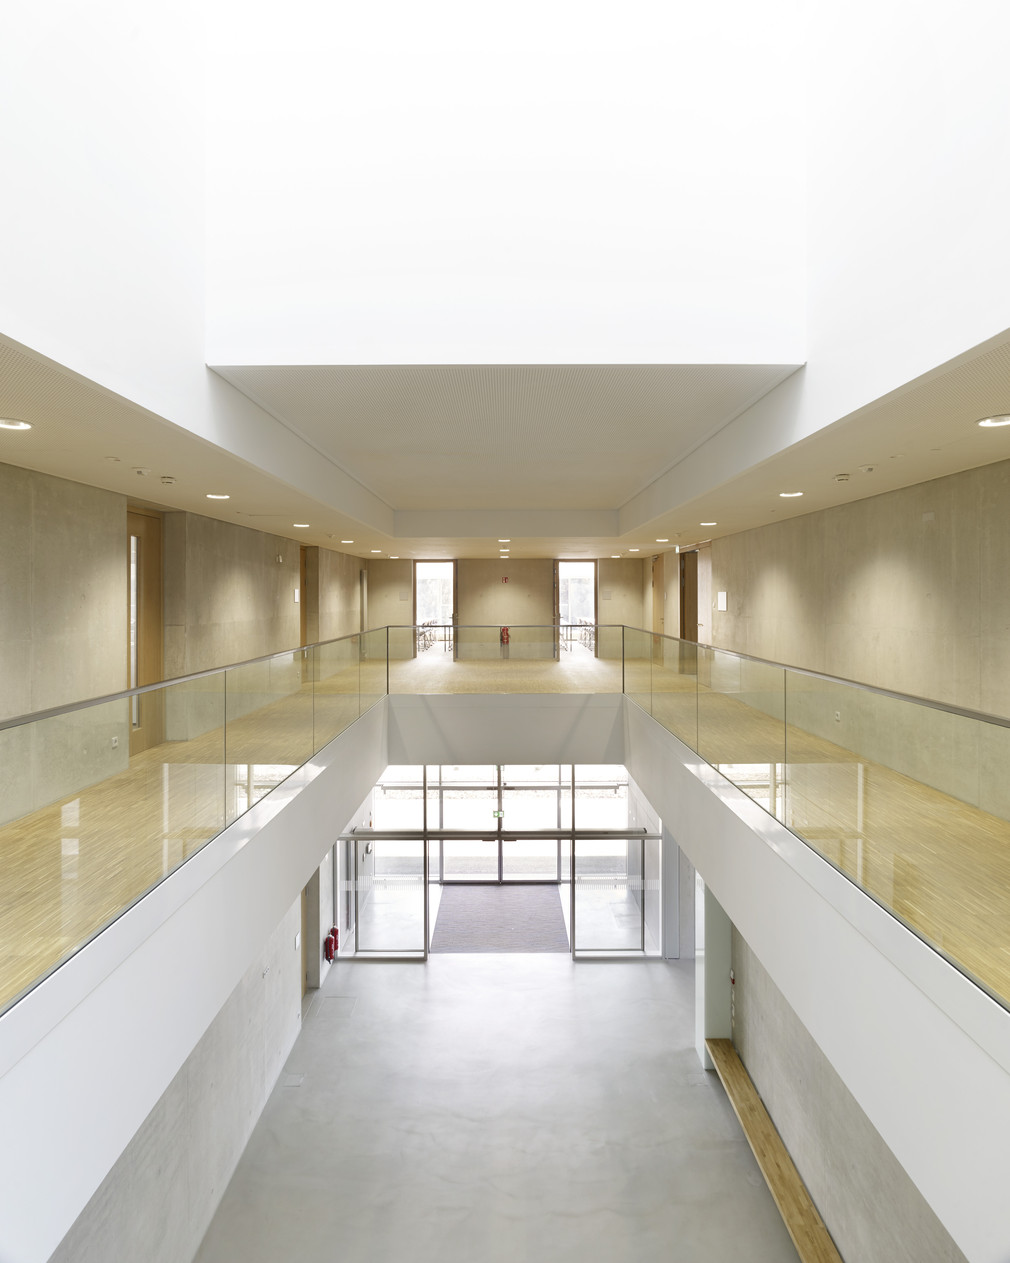 Das neue Seminargebäude der HTWG Konstanz. Bilder: wolframjanzerarchitekturbilder